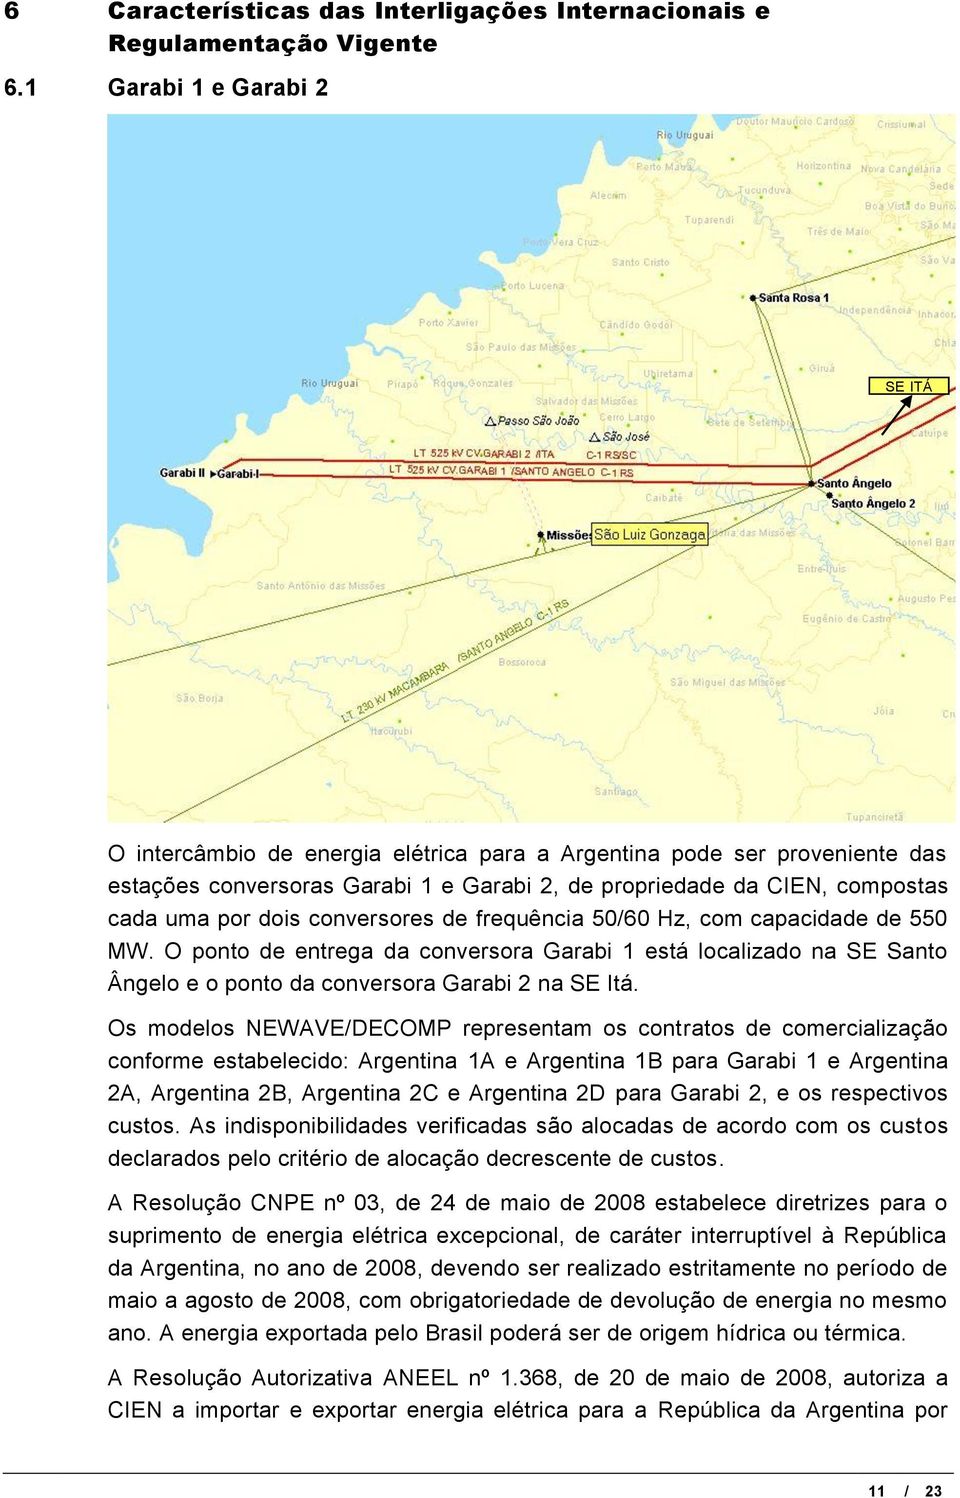 conversores de frequência 50/60 Hz, com capacidade de 550 MW. O ponto de entrega da conversora Garabi 1 está localizado na SE Santo Ângelo e o ponto da conversora Garabi 2 na SE Itá.